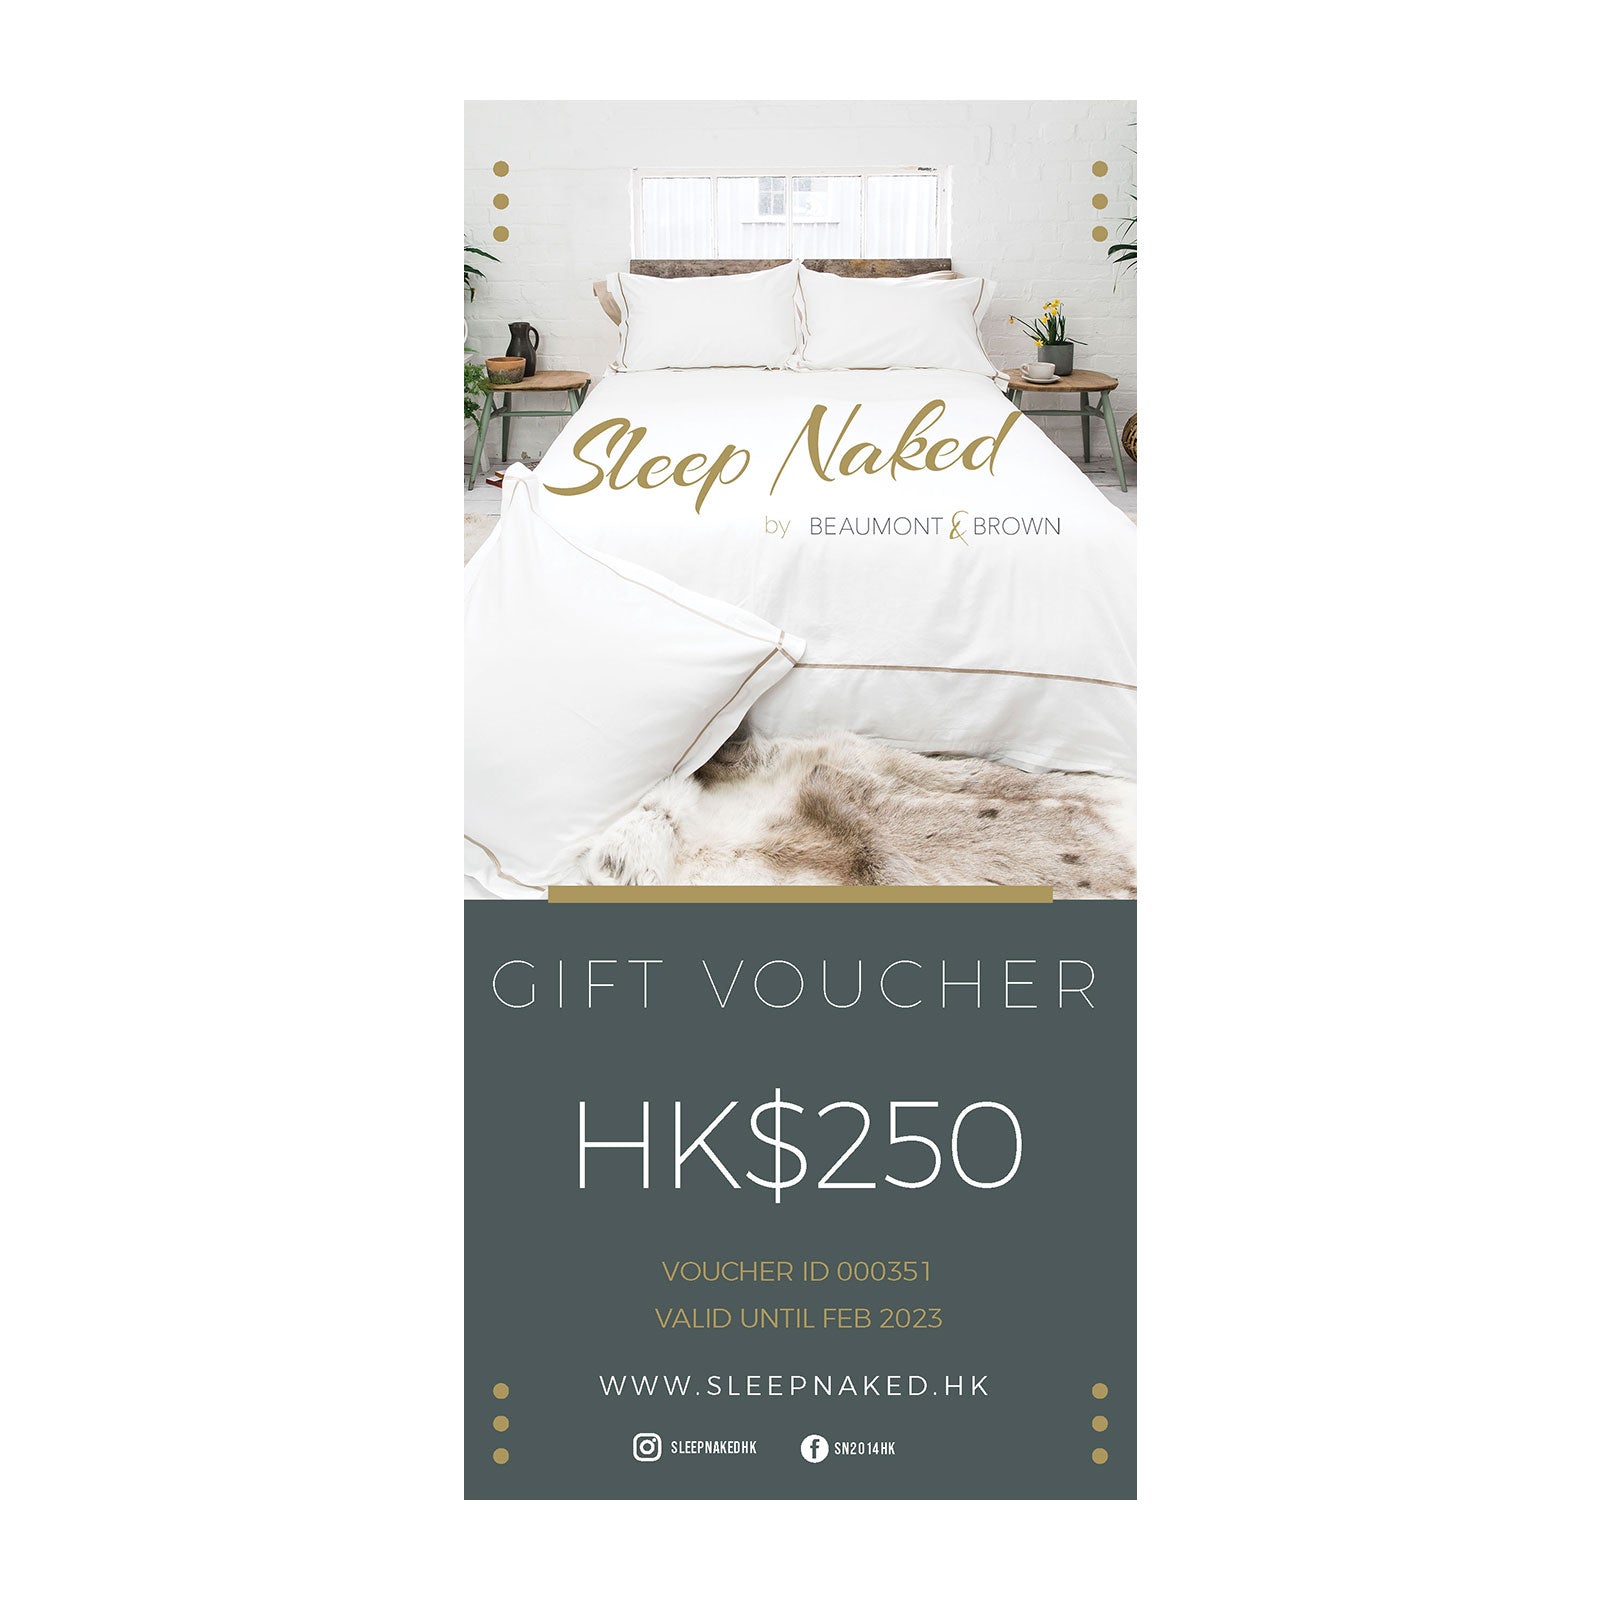 HK$250 Sleep Naked Gift Voucher